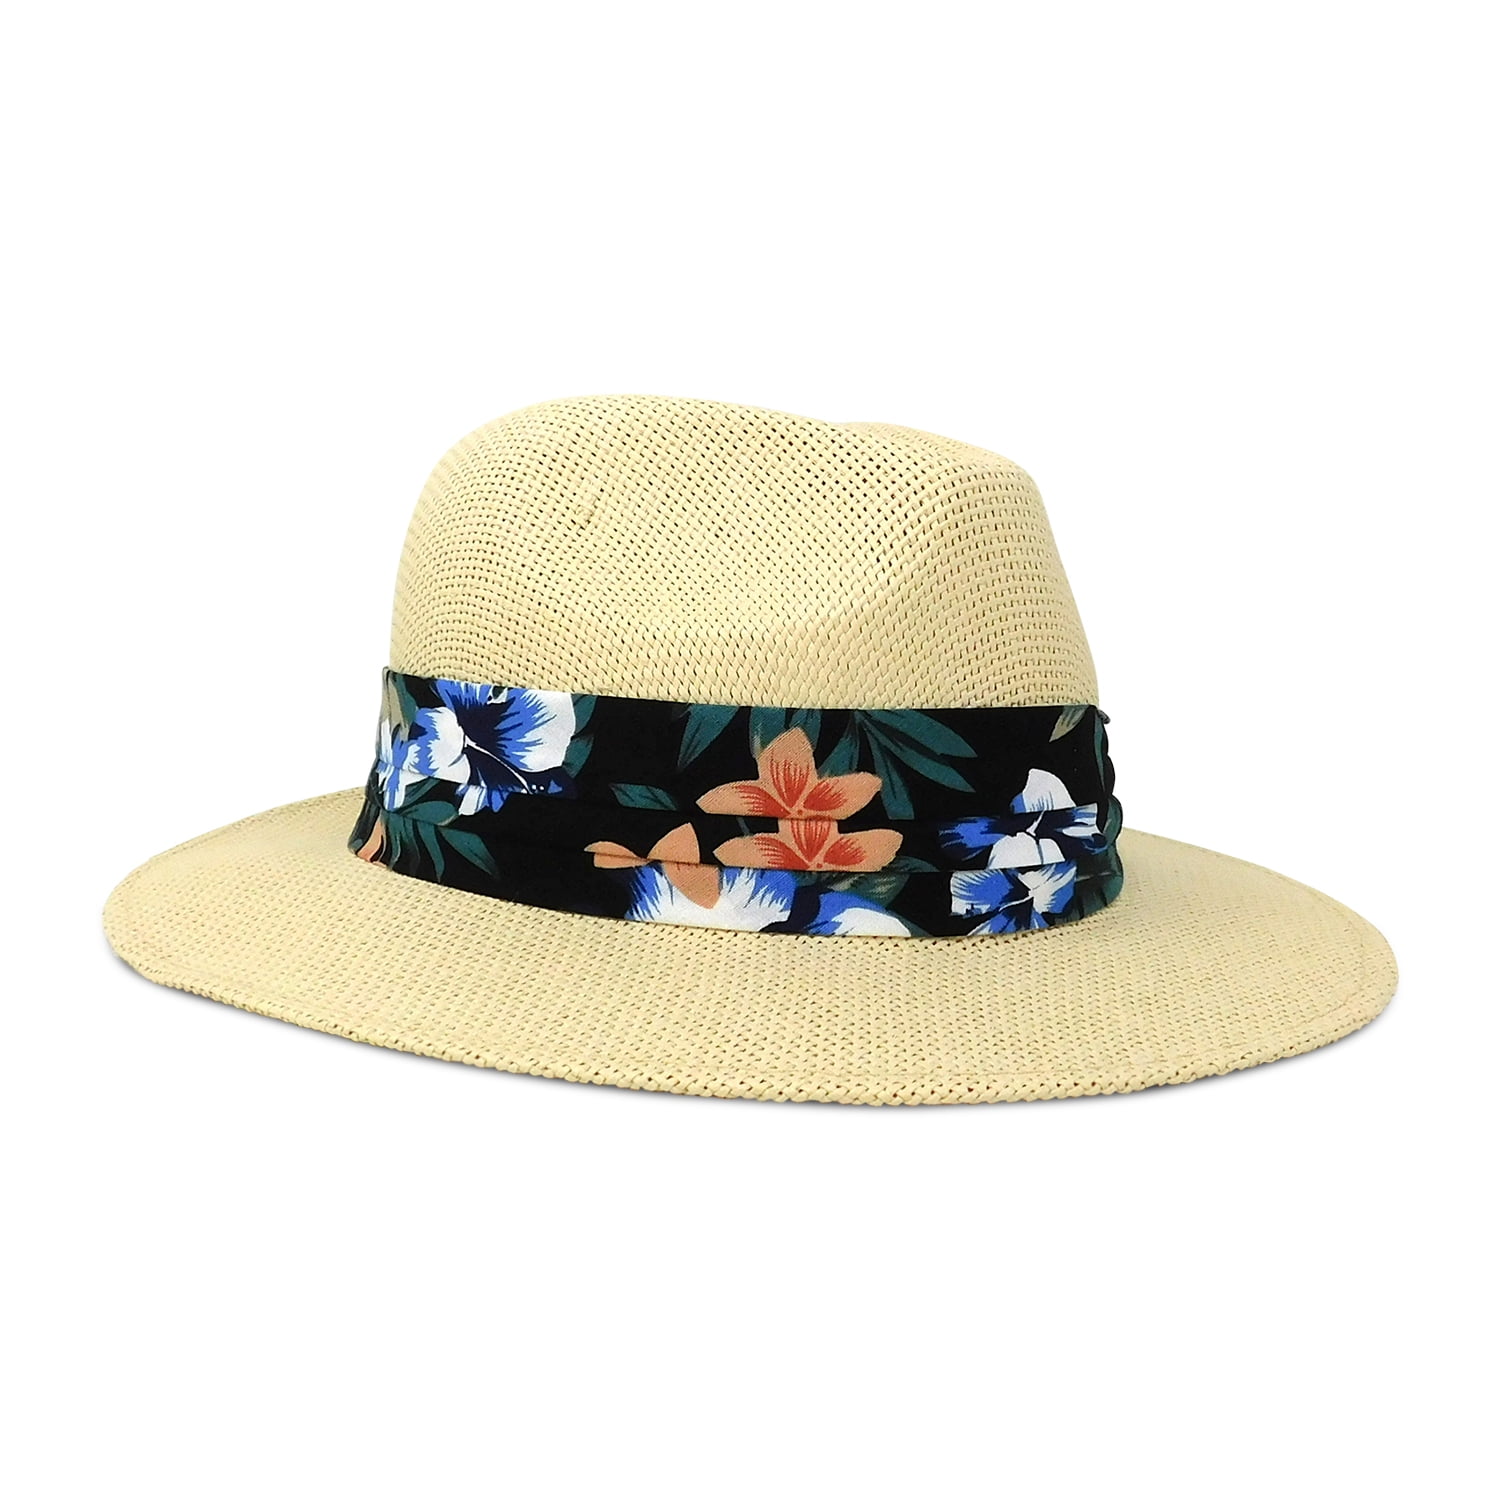 Panama Jack - Panama Jack Safari Sun Hat - Lightweight Matte Toyo Straw ...